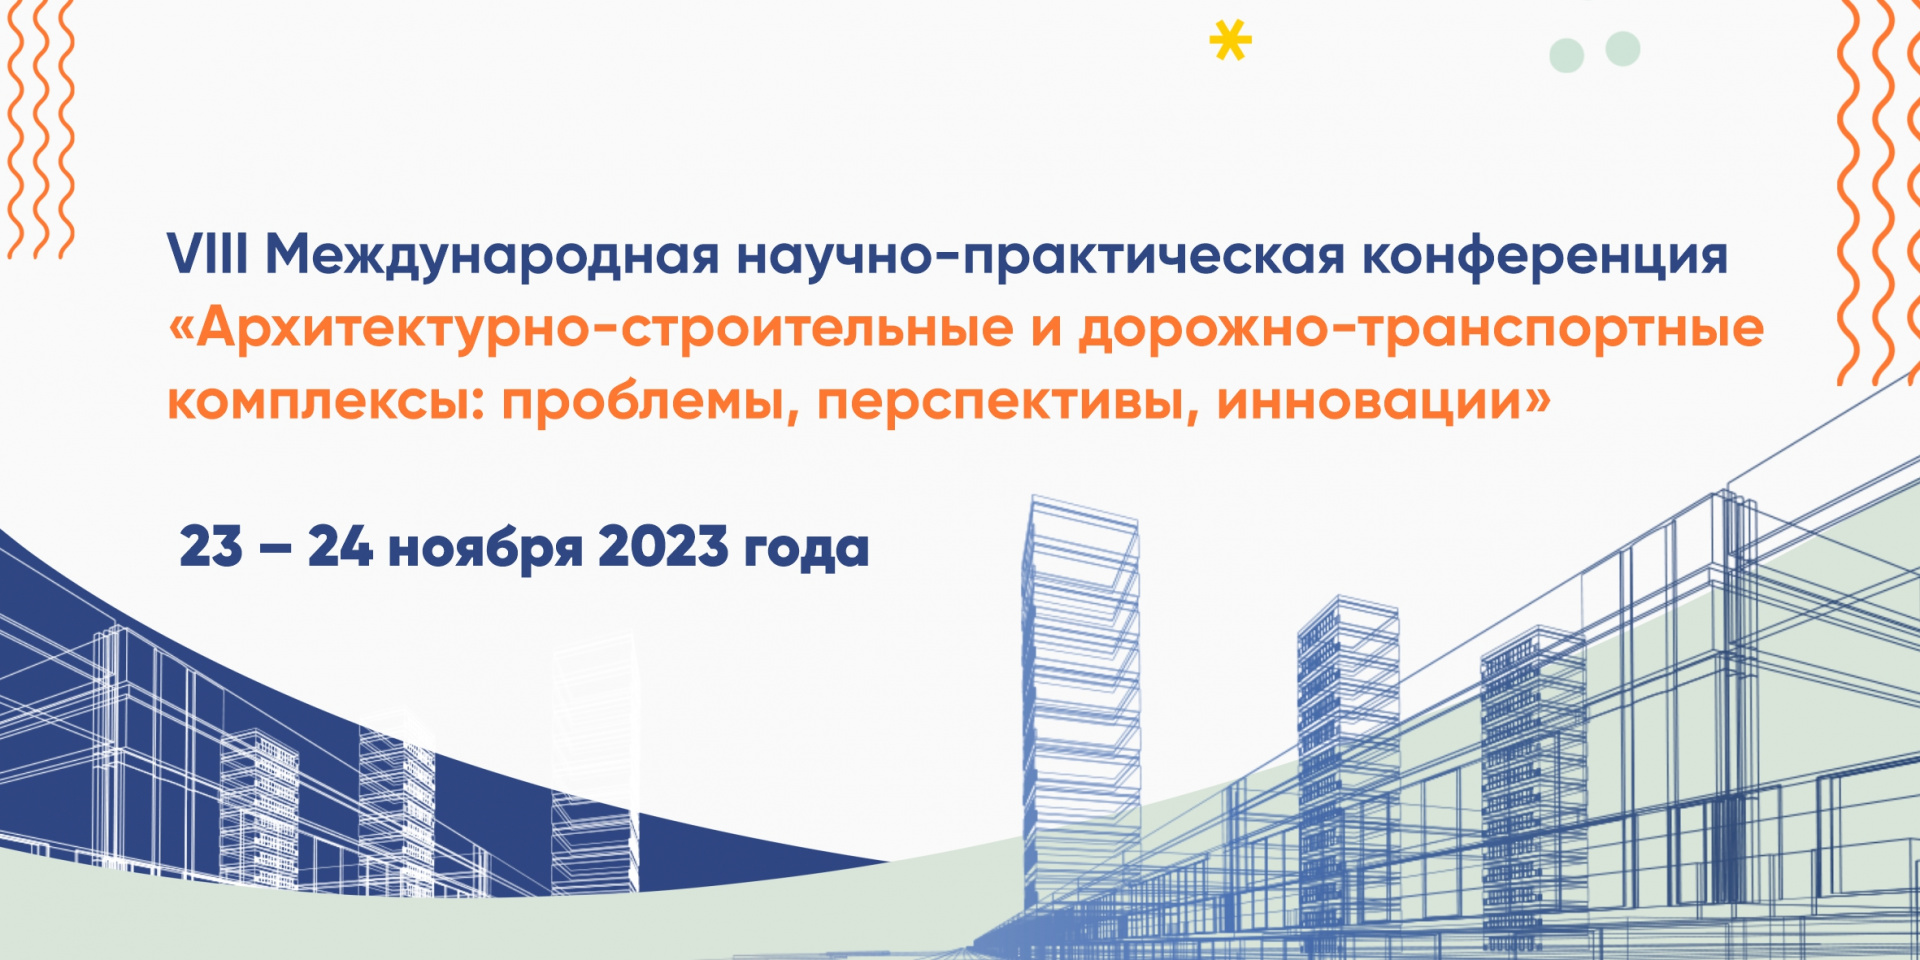 VIII Международной научно-практической конференции «Архитектурно-строительный и дорожно-транспортный комплексы: проблемы, перспективы, инновации»